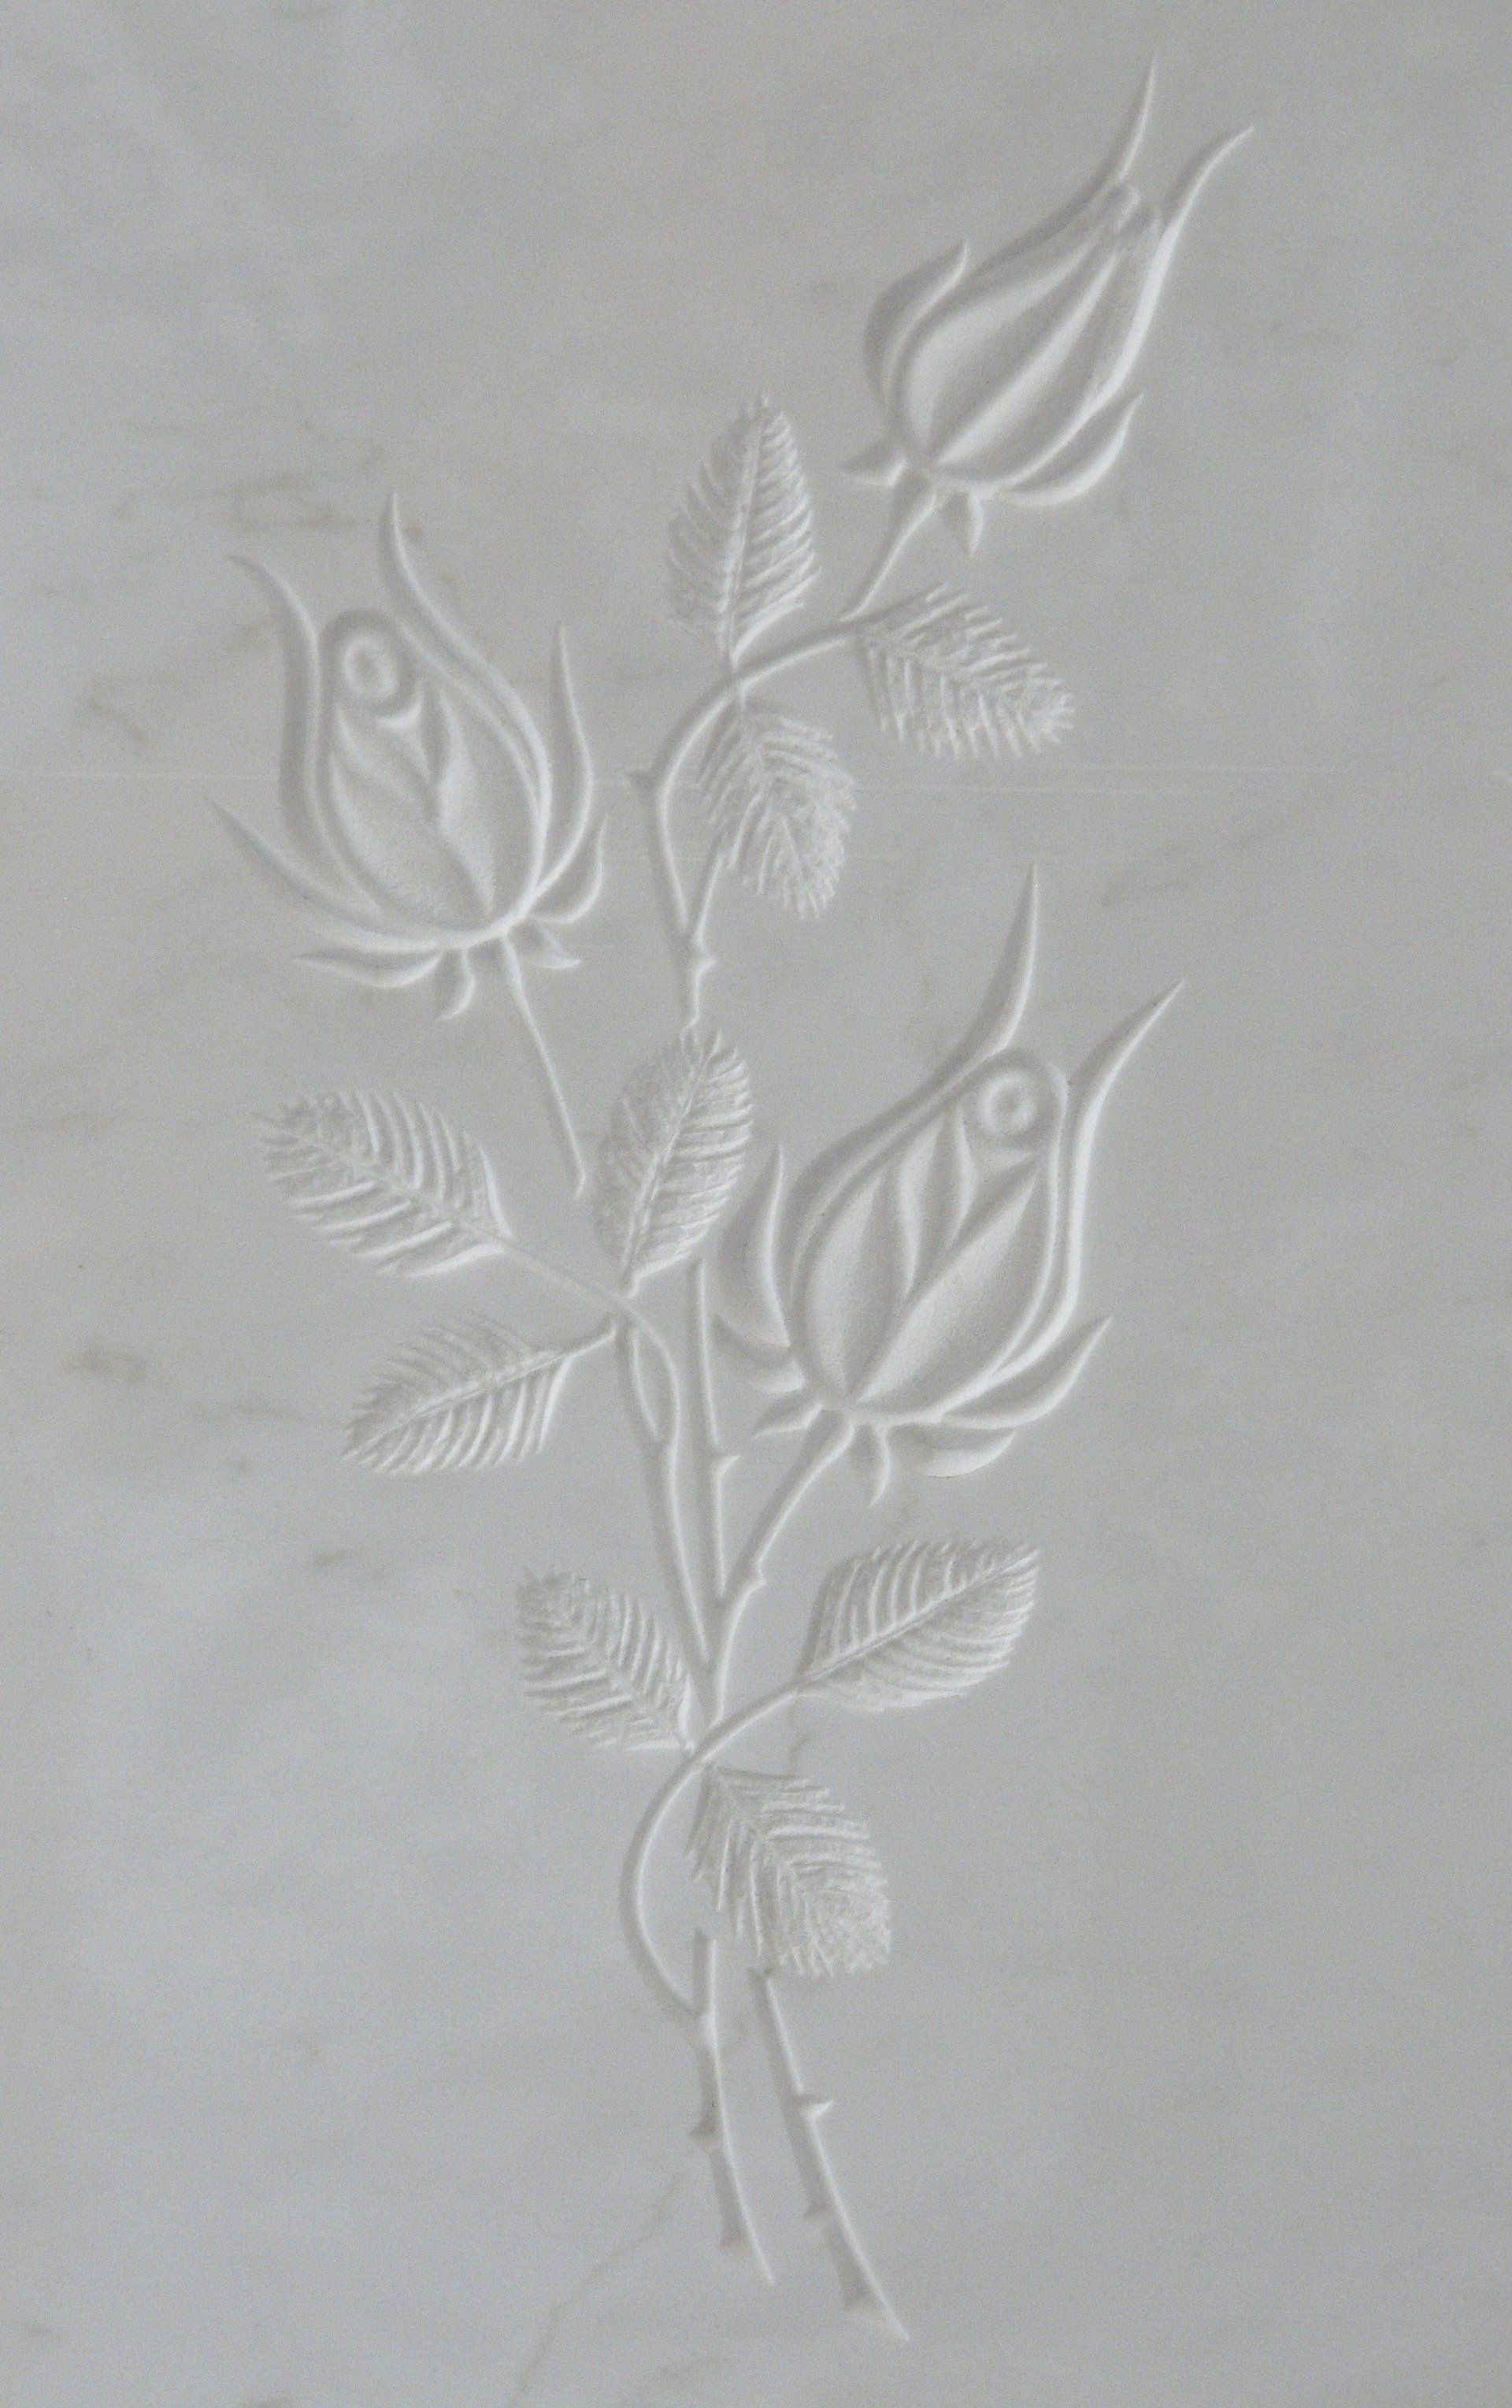 bassorilievo su marmo bianco rappresentante due rose